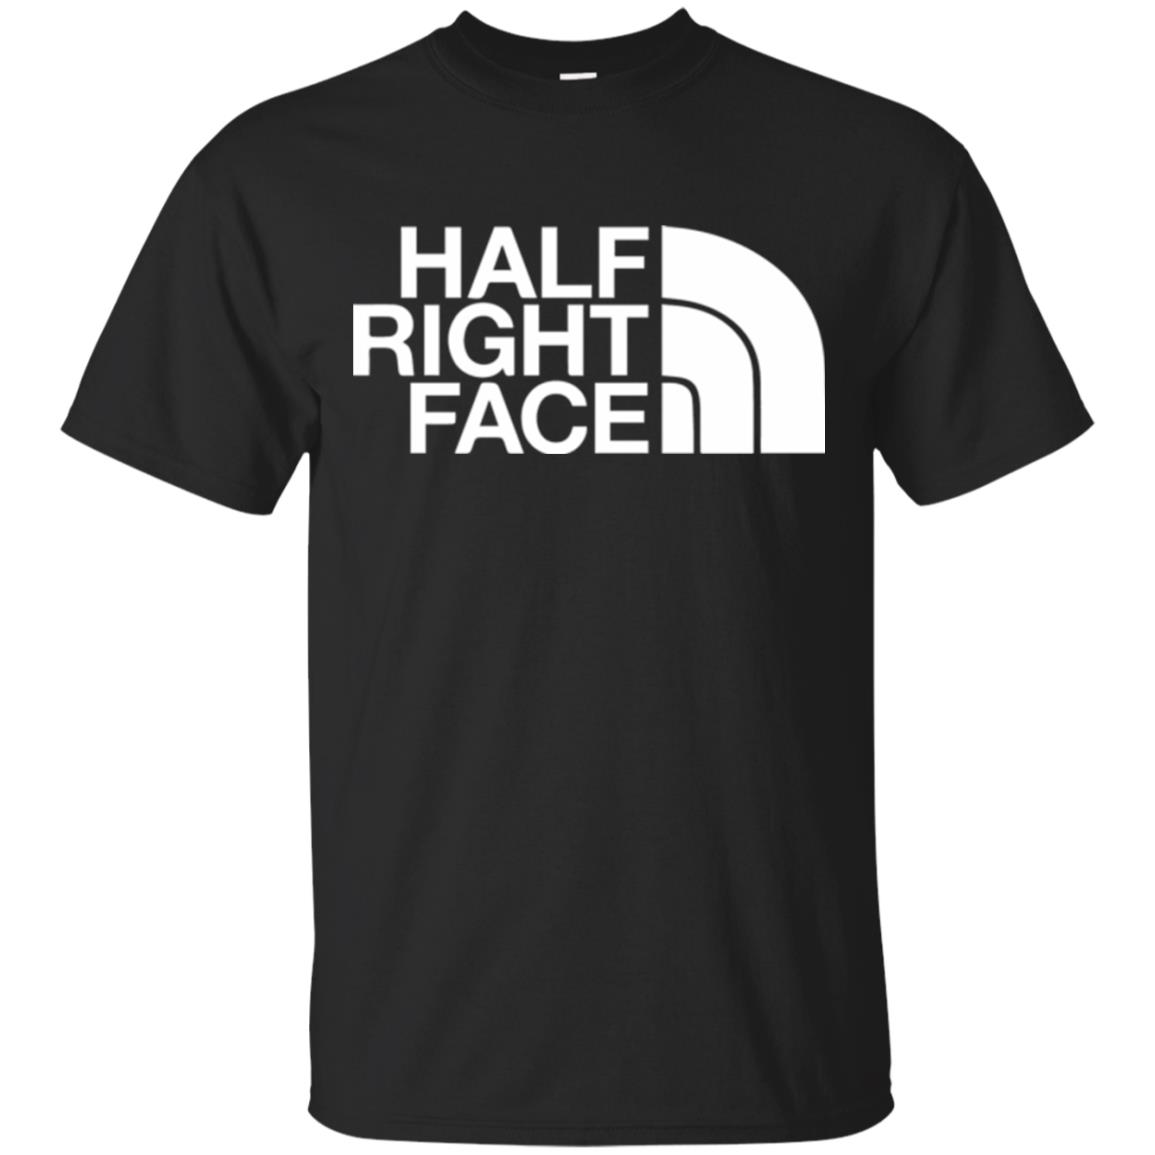 half right face shirt - black